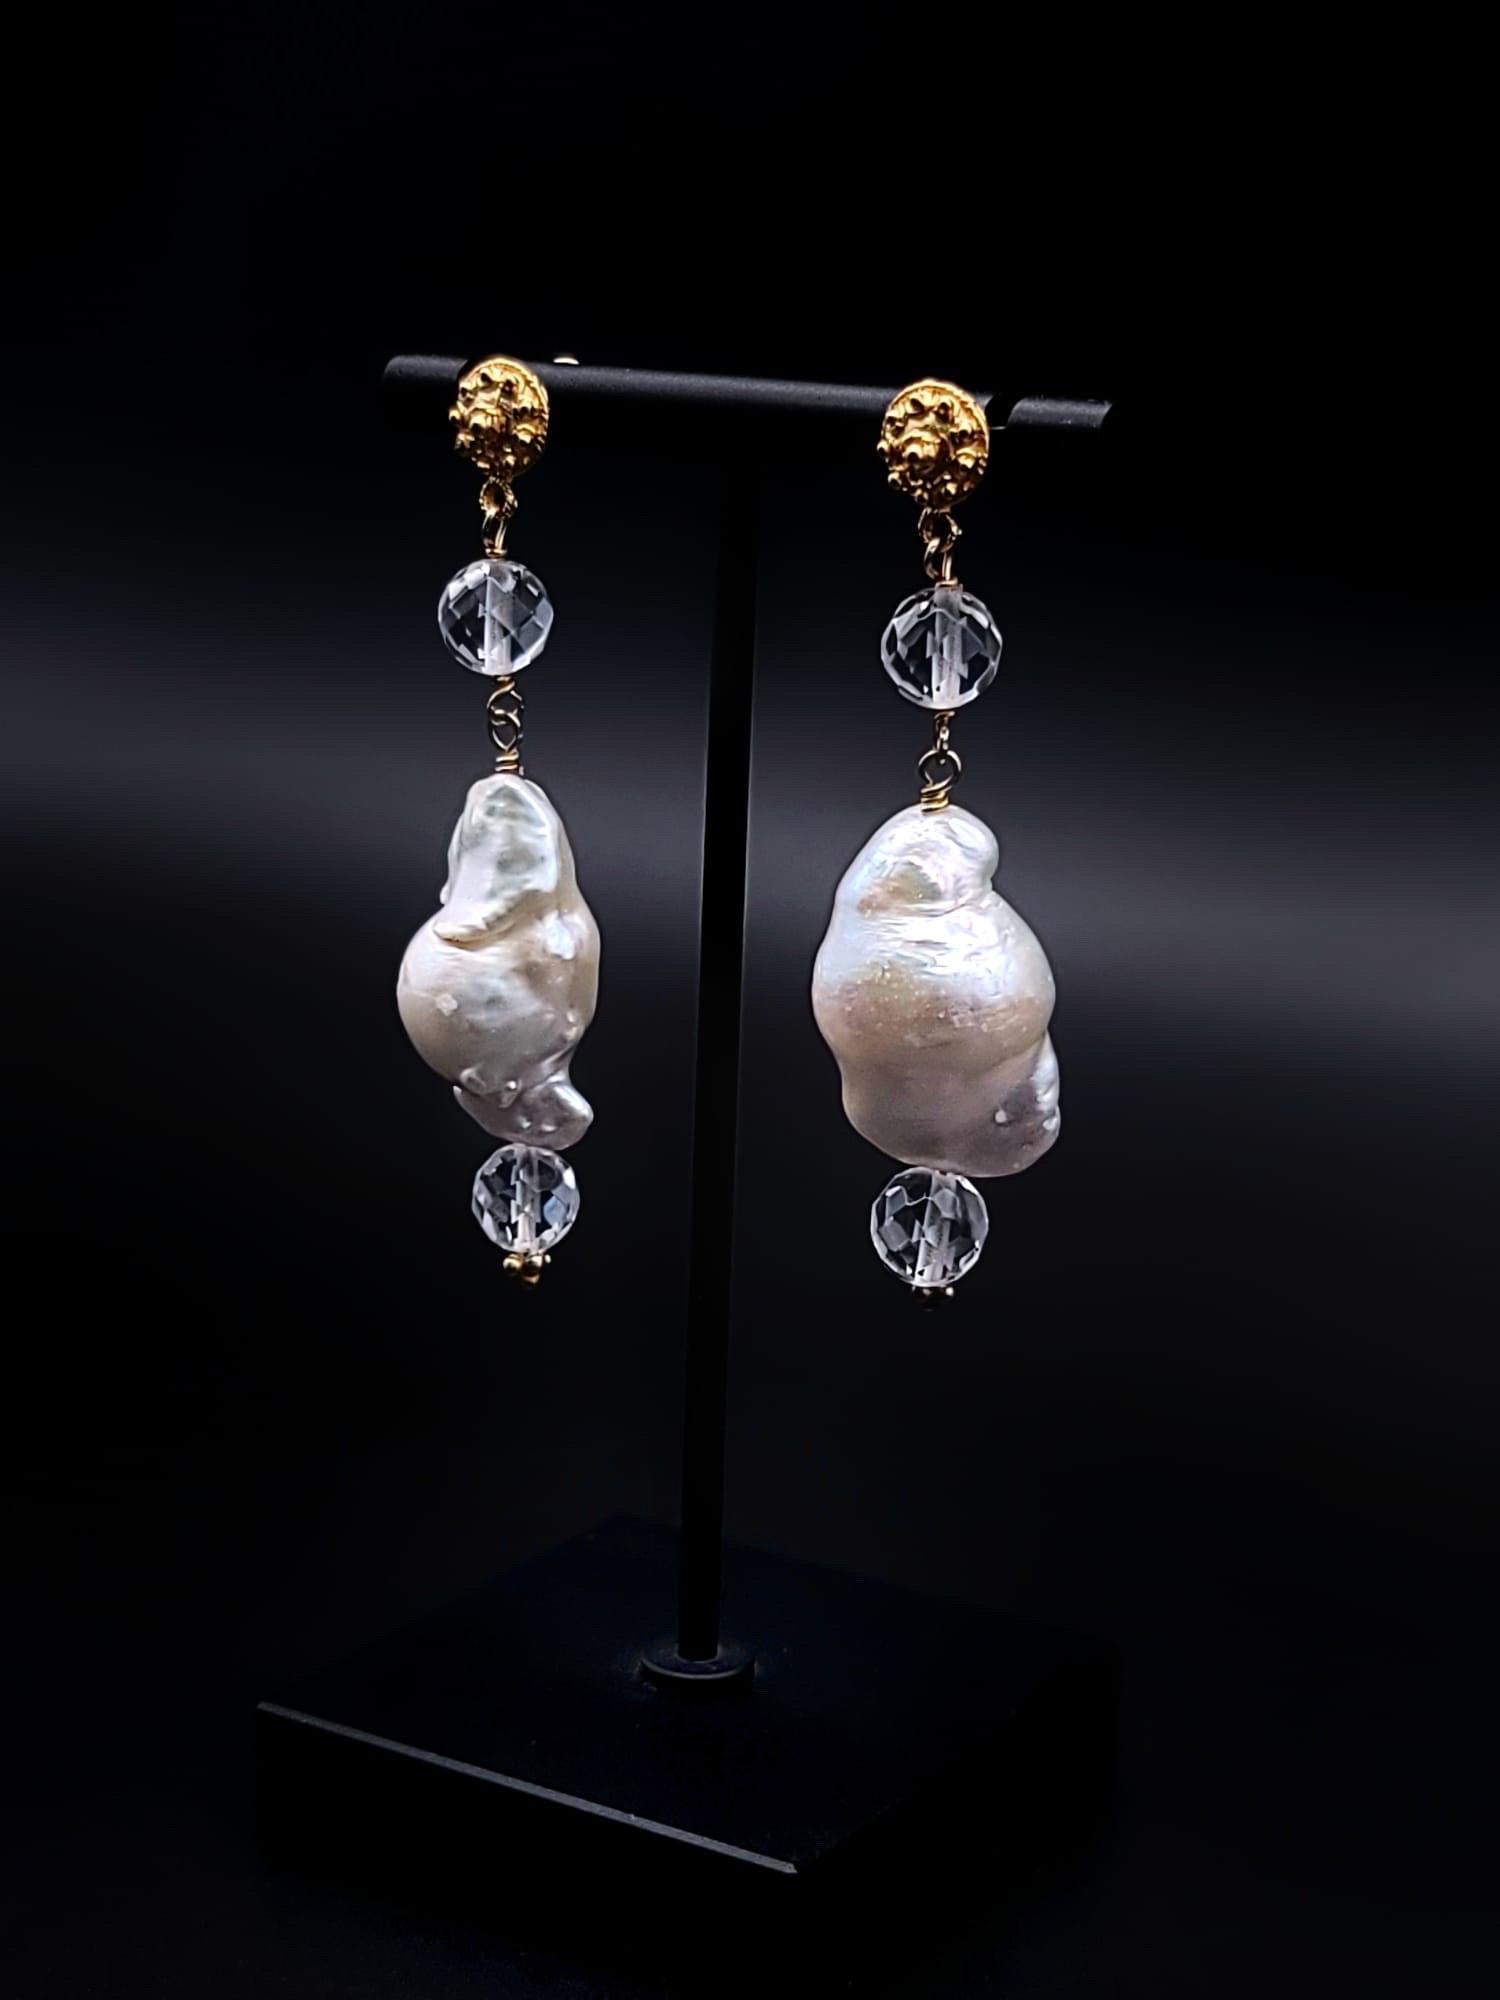 Unique en son genre

Ces superbes boucles d'oreilles en perles et cristaux exsudent l'élégance et le charme. La paire de grandes perles lustrées blanc baroque est suspendue à une perle de cristal taillé, créant une silhouette belle et gracieuse. Les